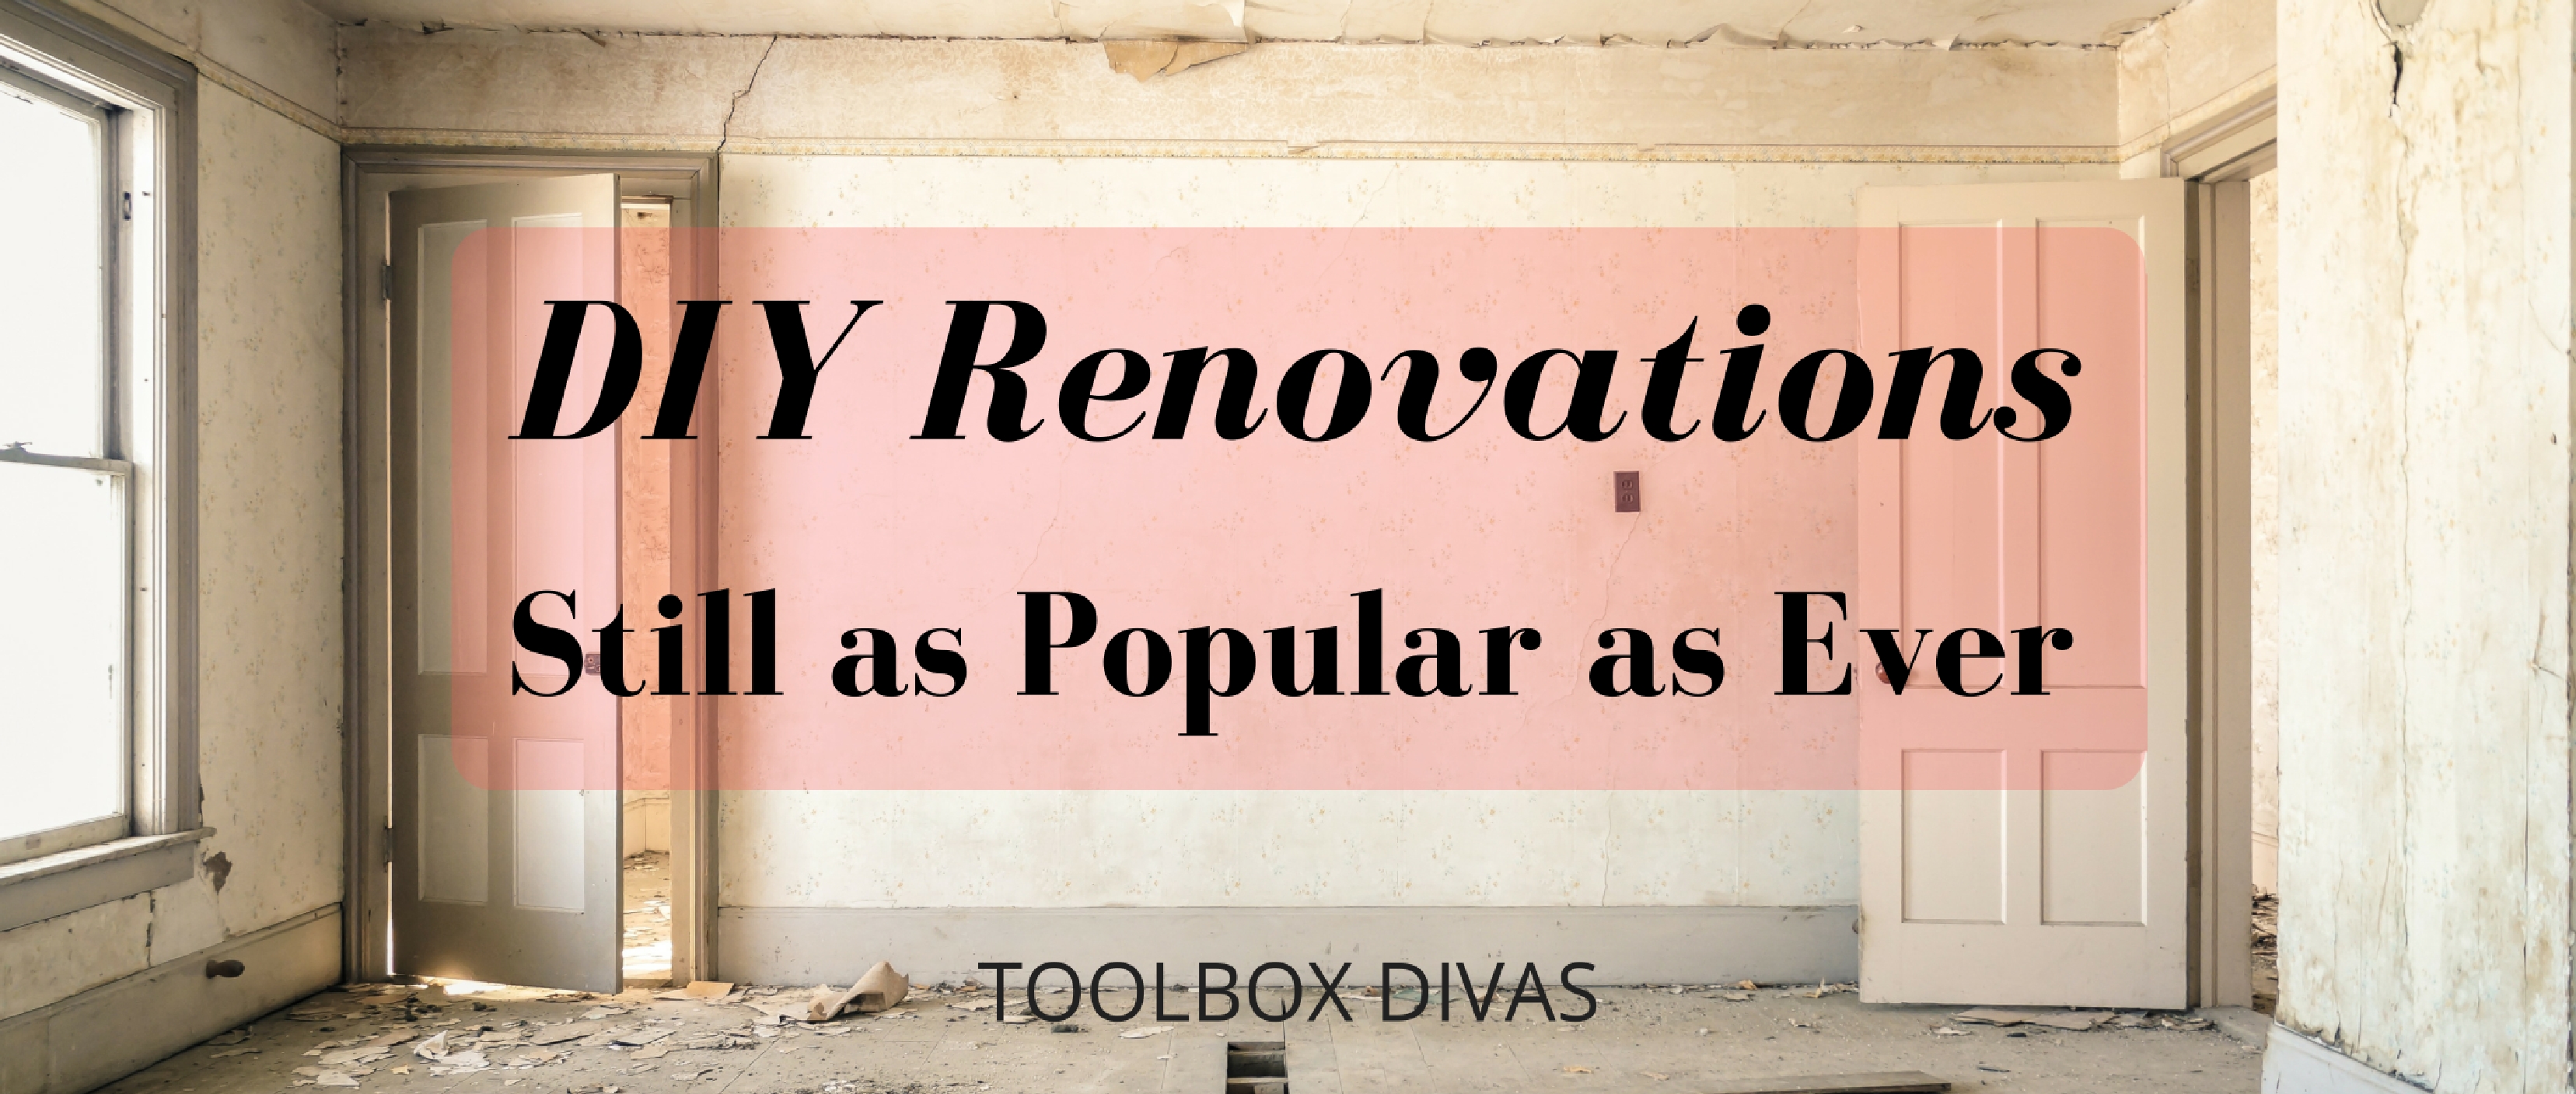 DIY Renovations Still as Popular as Ever